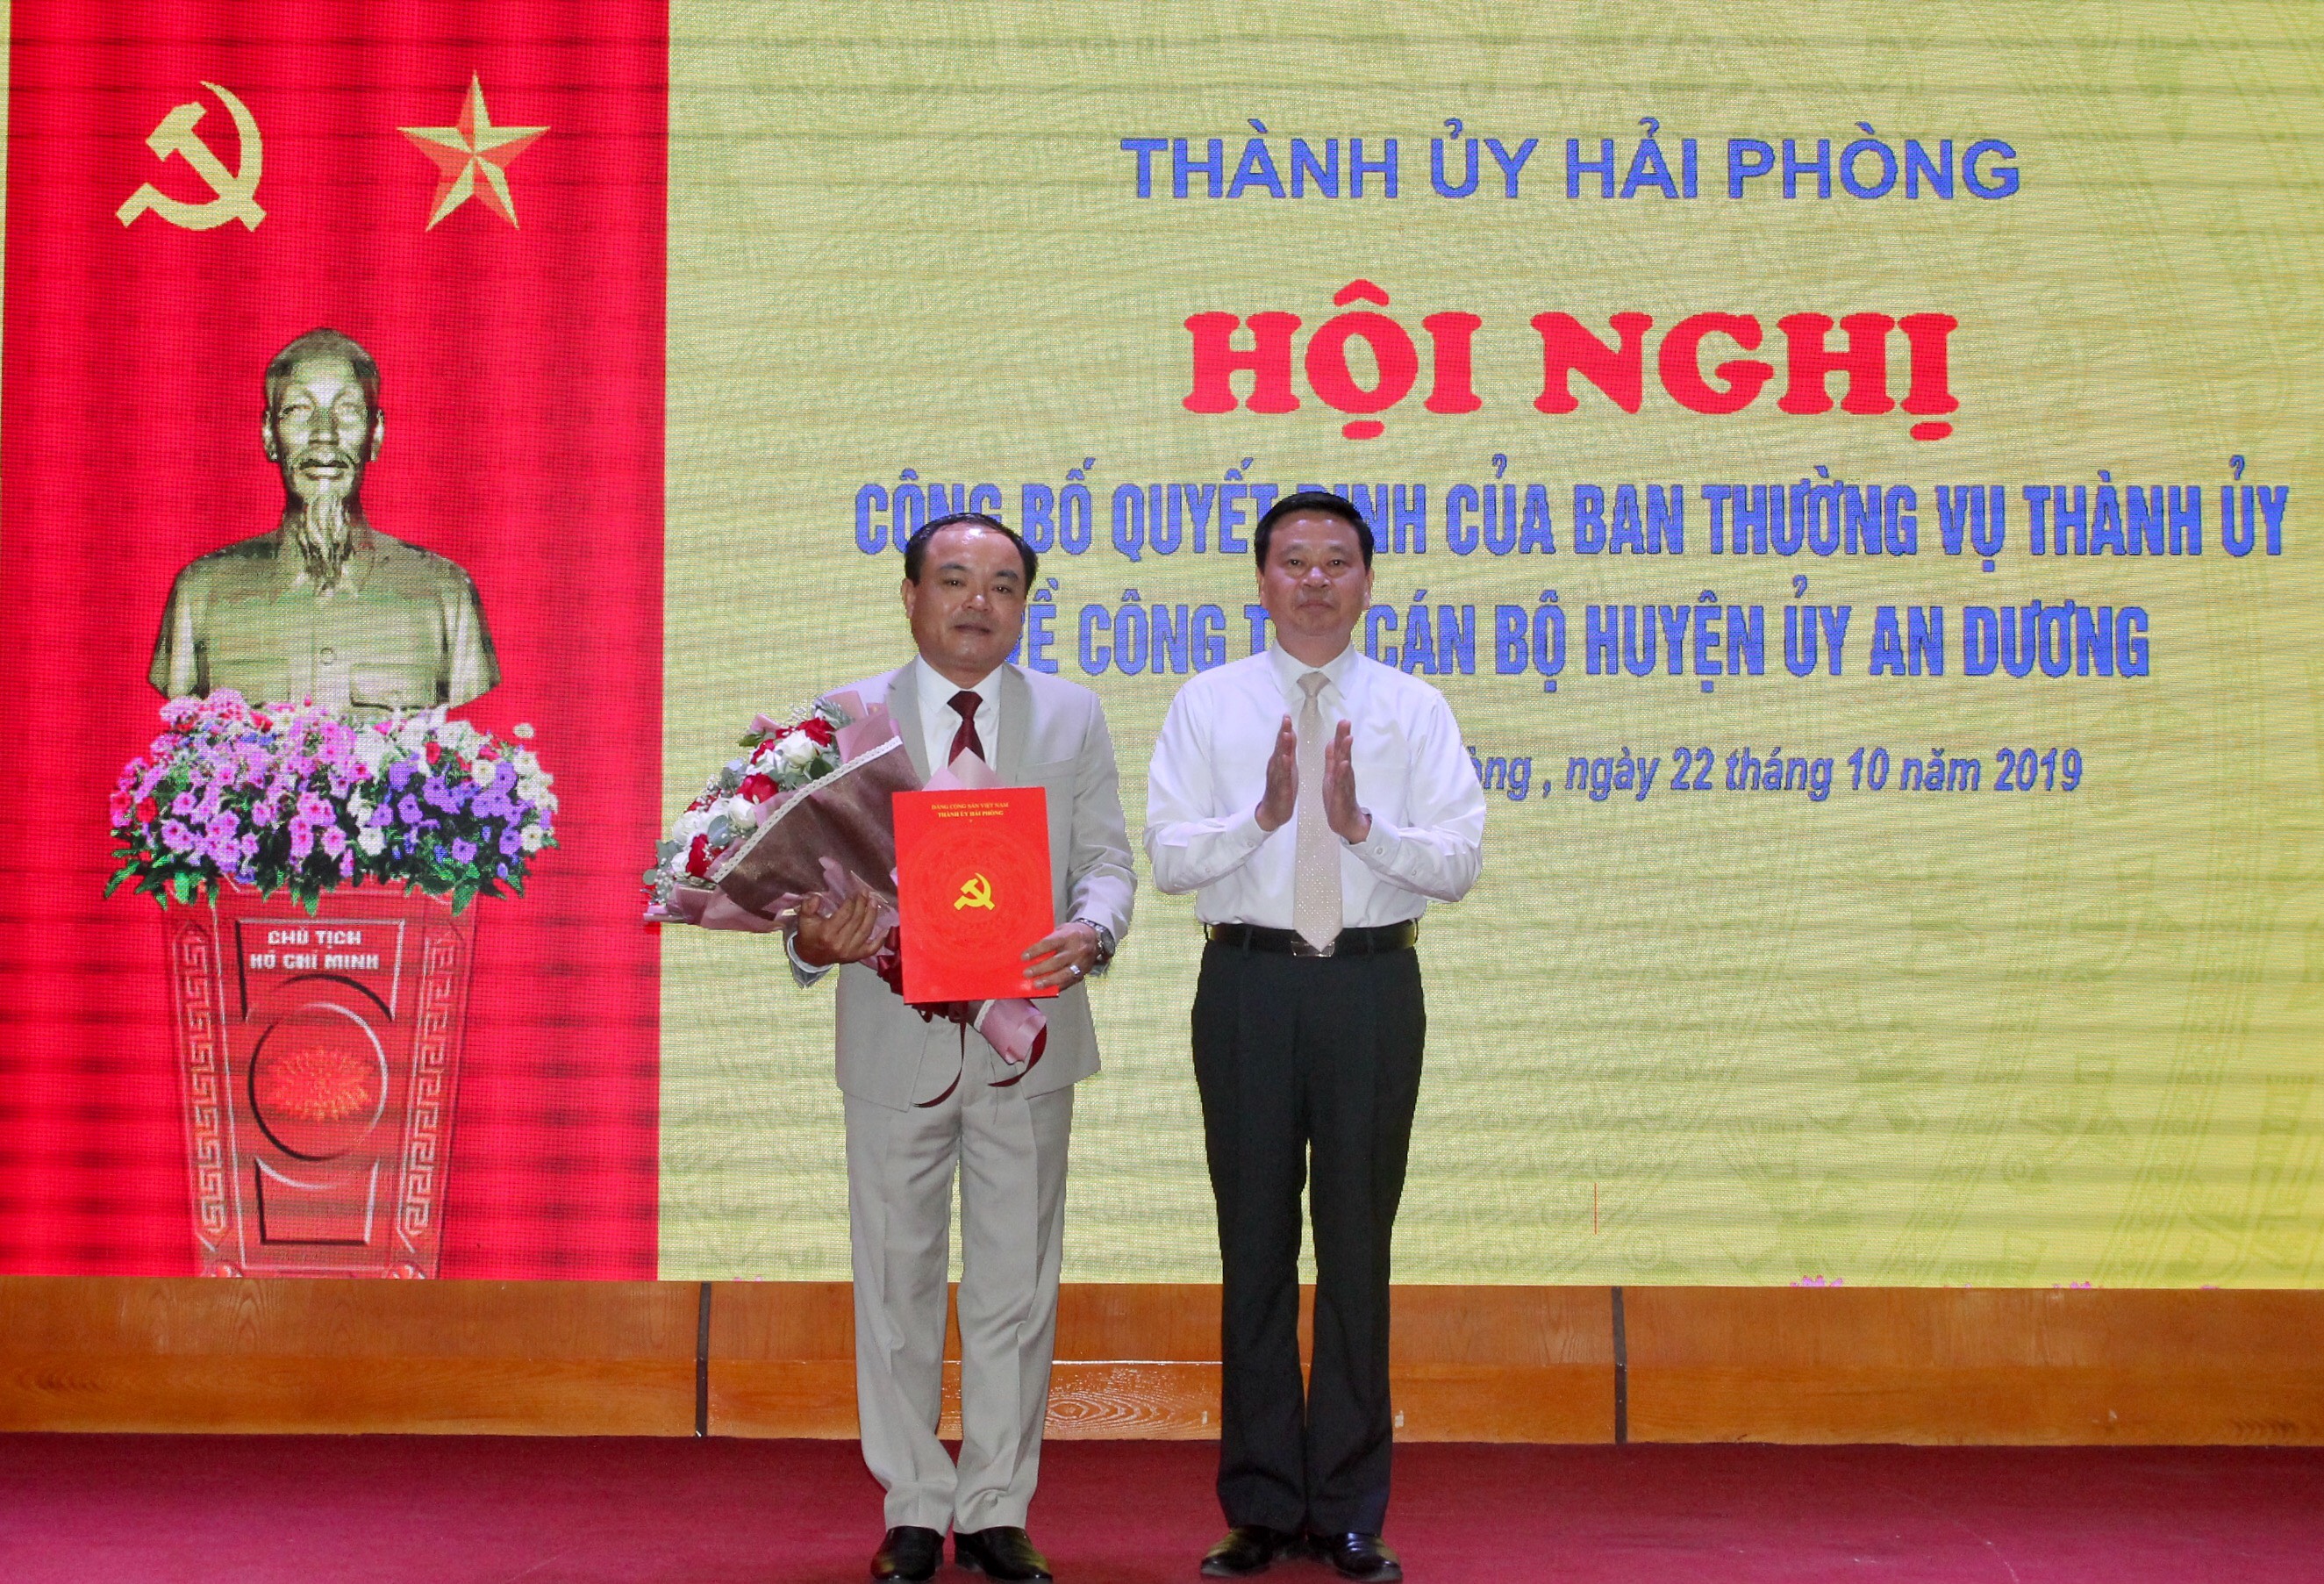 Đồng chí Nguyễn Trường Sơn được chuẩn y chức danh Phó bí thư Huyện ủy nhiệm kỳ 2015- 2020 